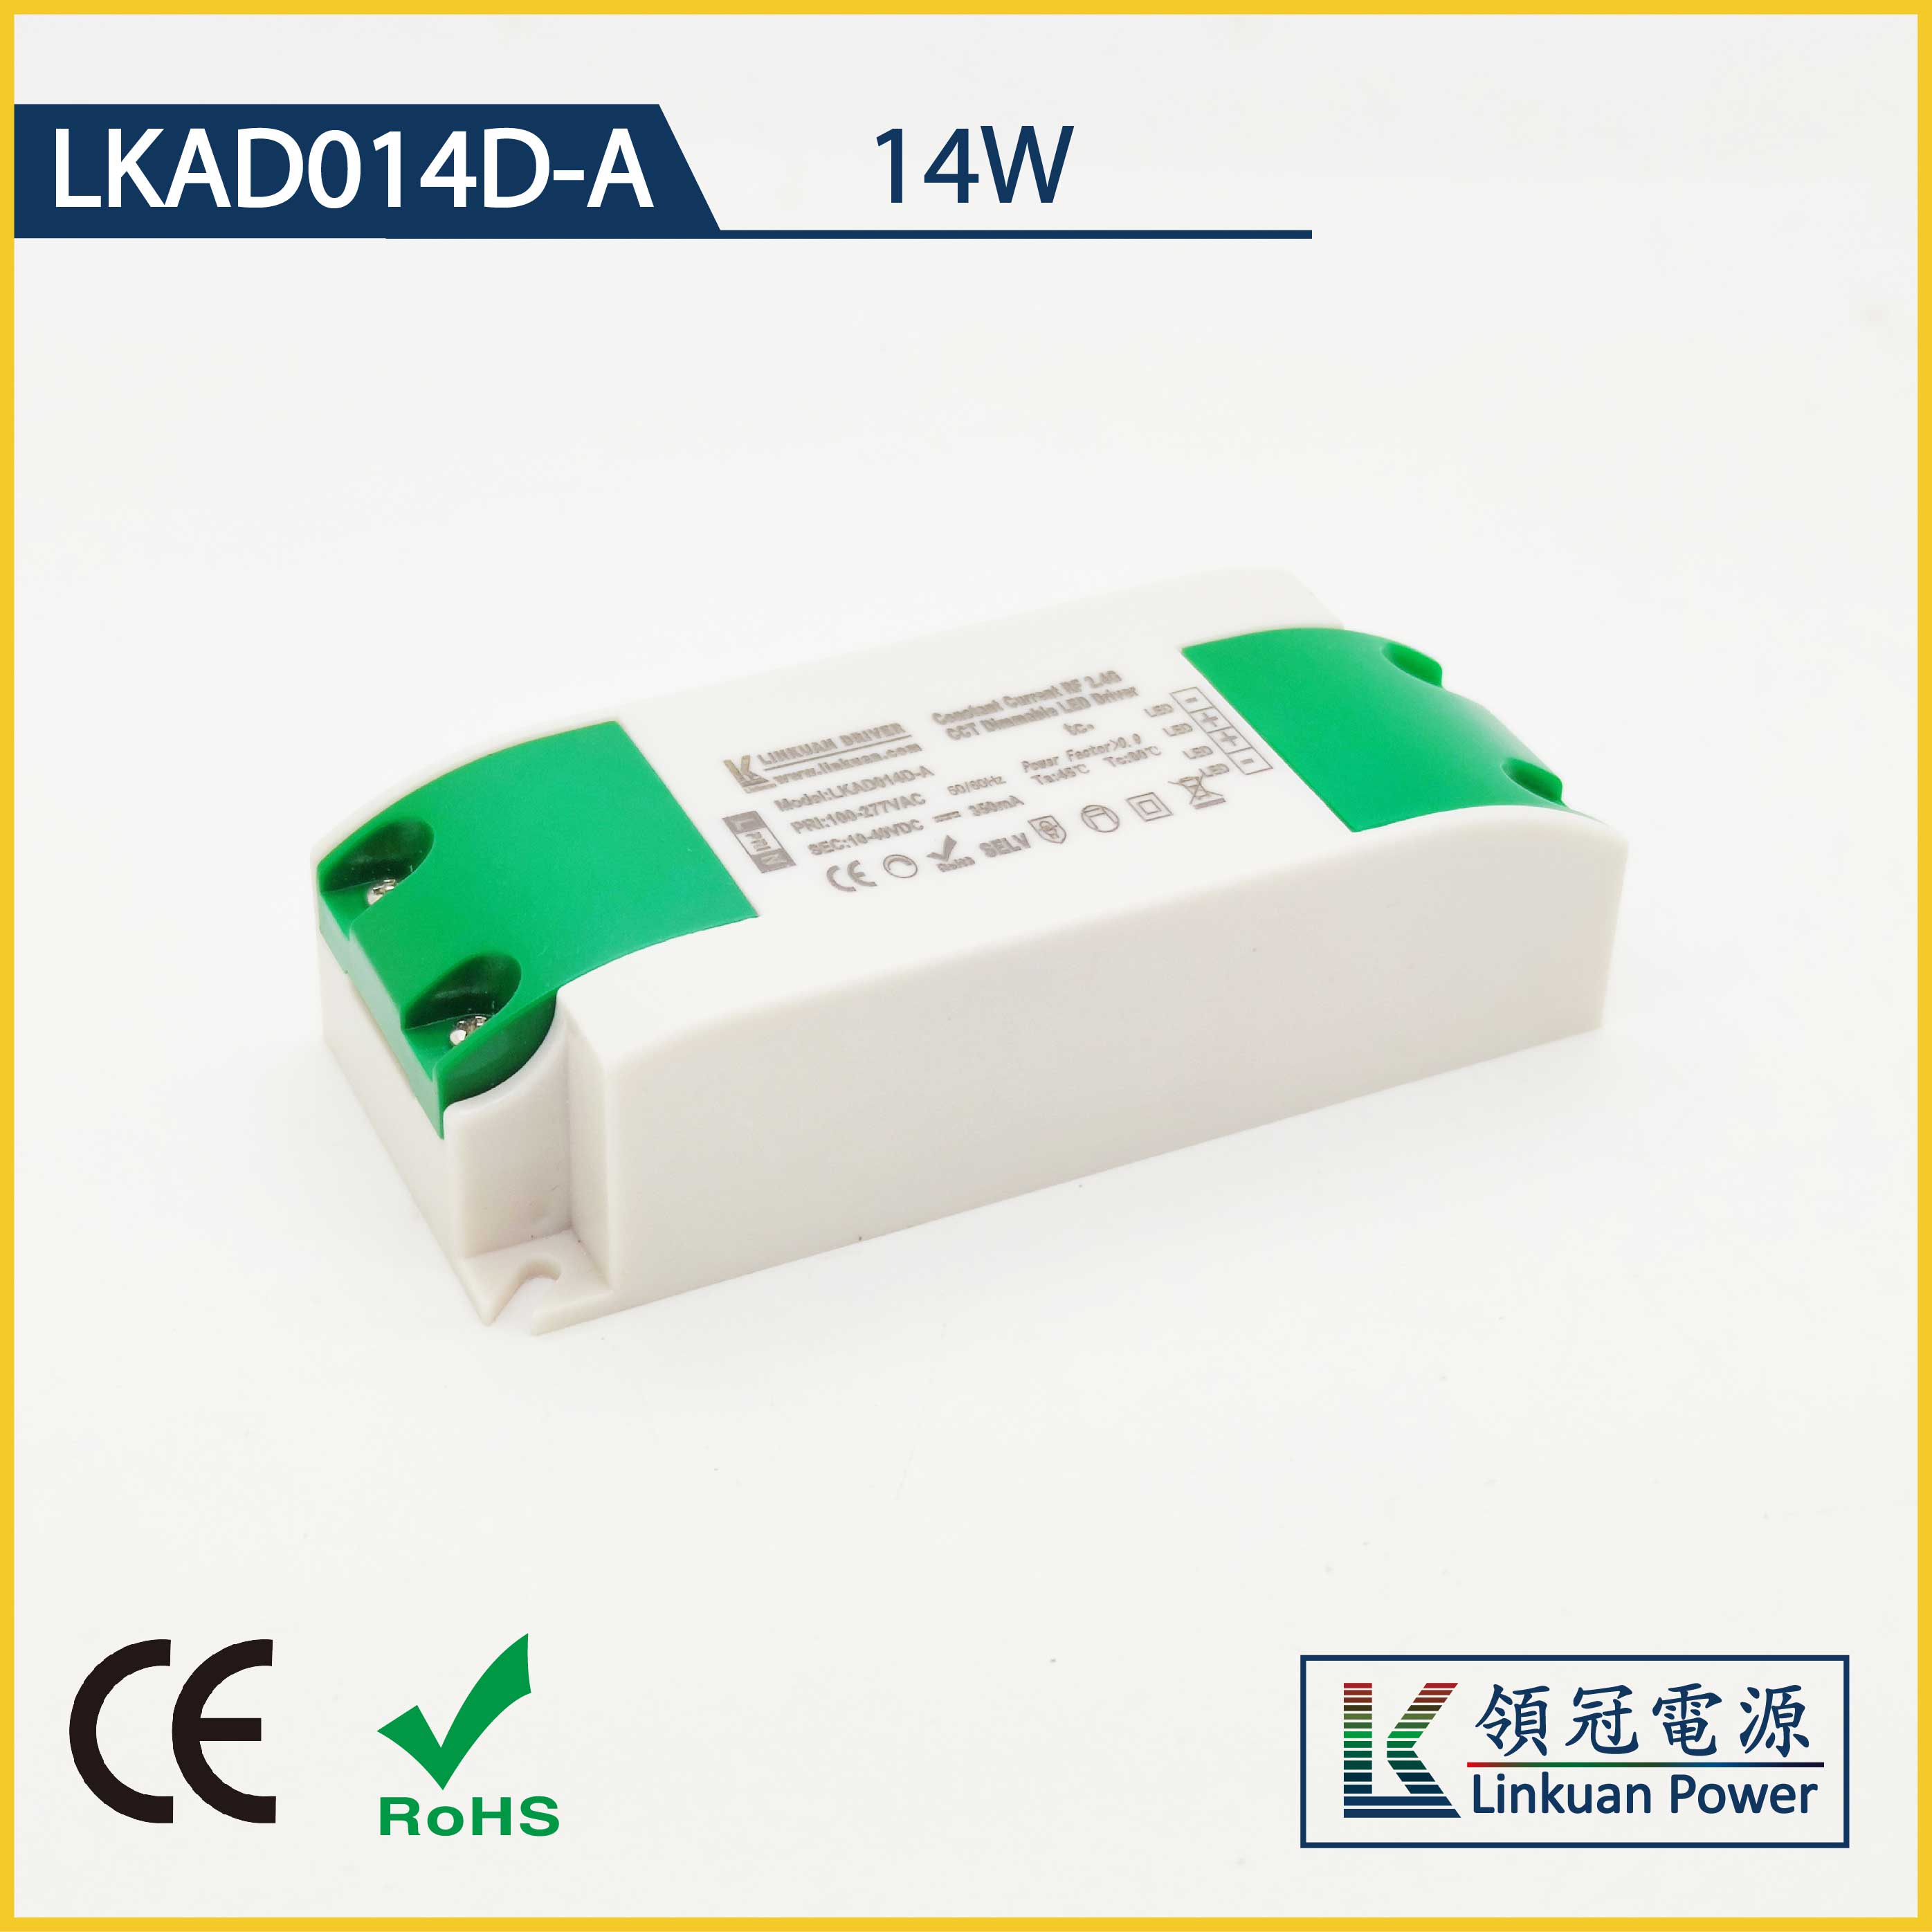 LKAD014D-A 14W 5-42V 350mA CCT Adjusting LED drivers